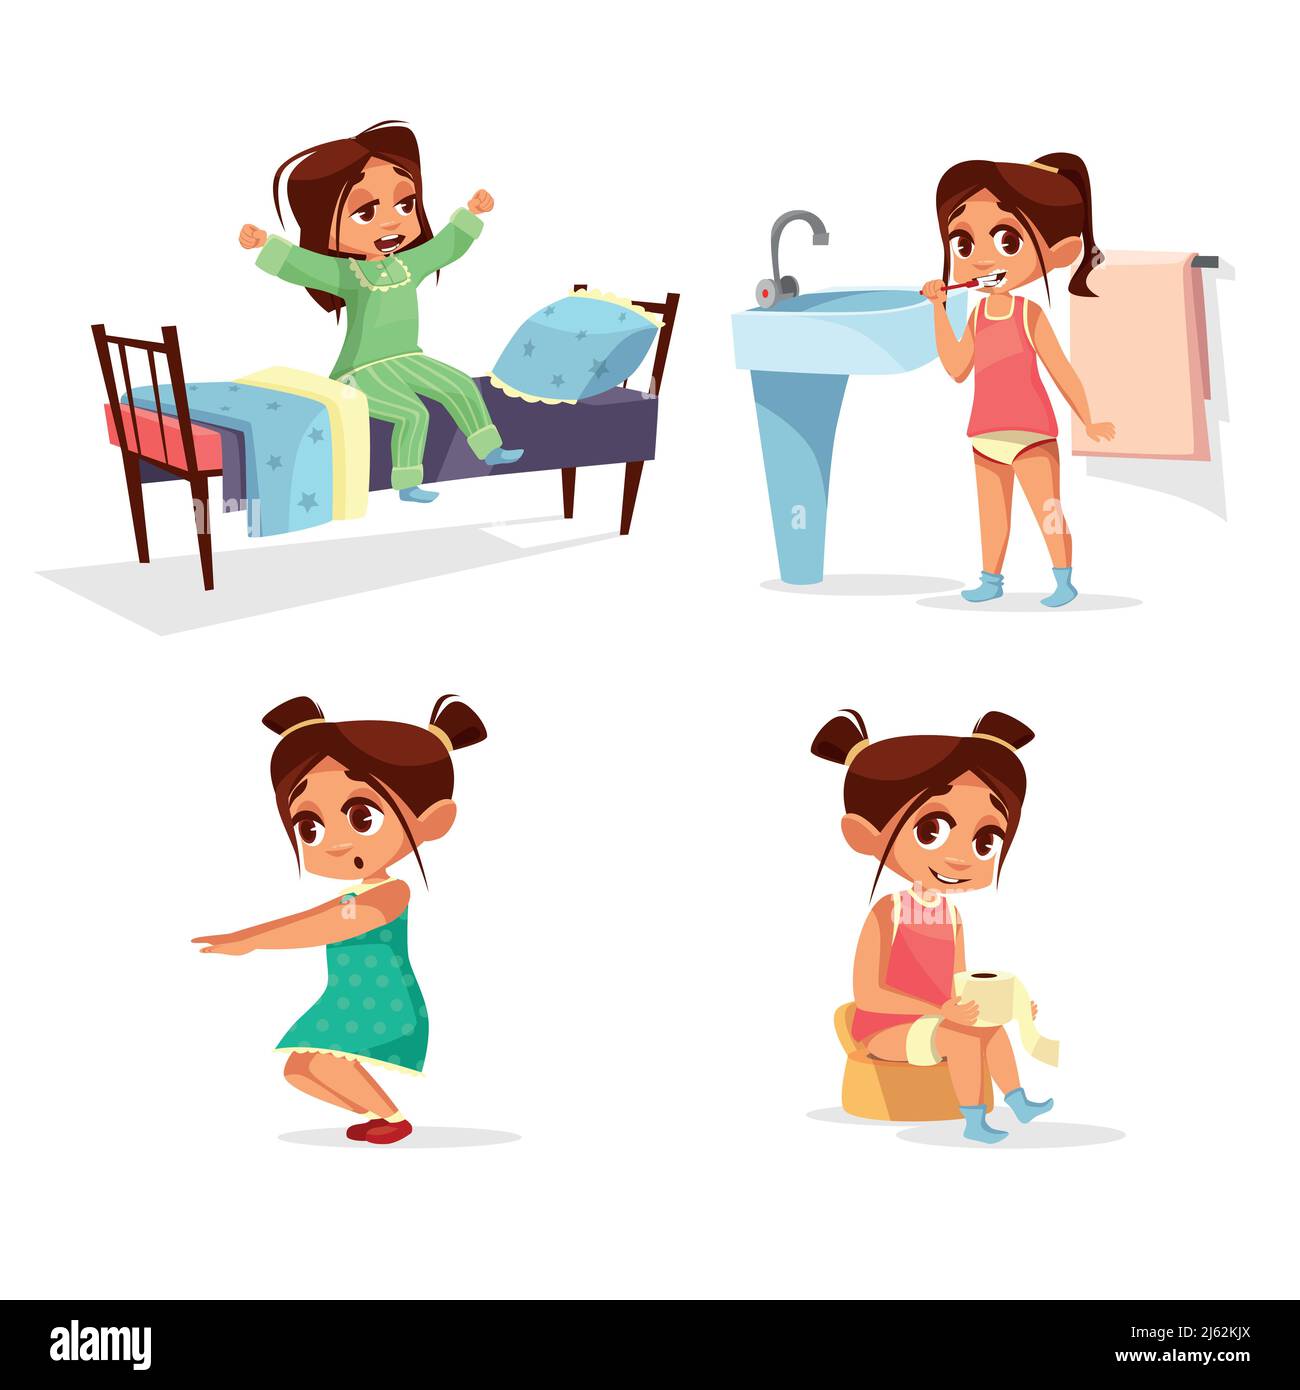 Mädchen Kind Morgen Routine Vektor Cartoon Illustration. Flaches Design von Mädchen Kind aus dem Schlaf aufwachen, Waschen und Zähneputzen in Bad Toilette und Stock Vektor